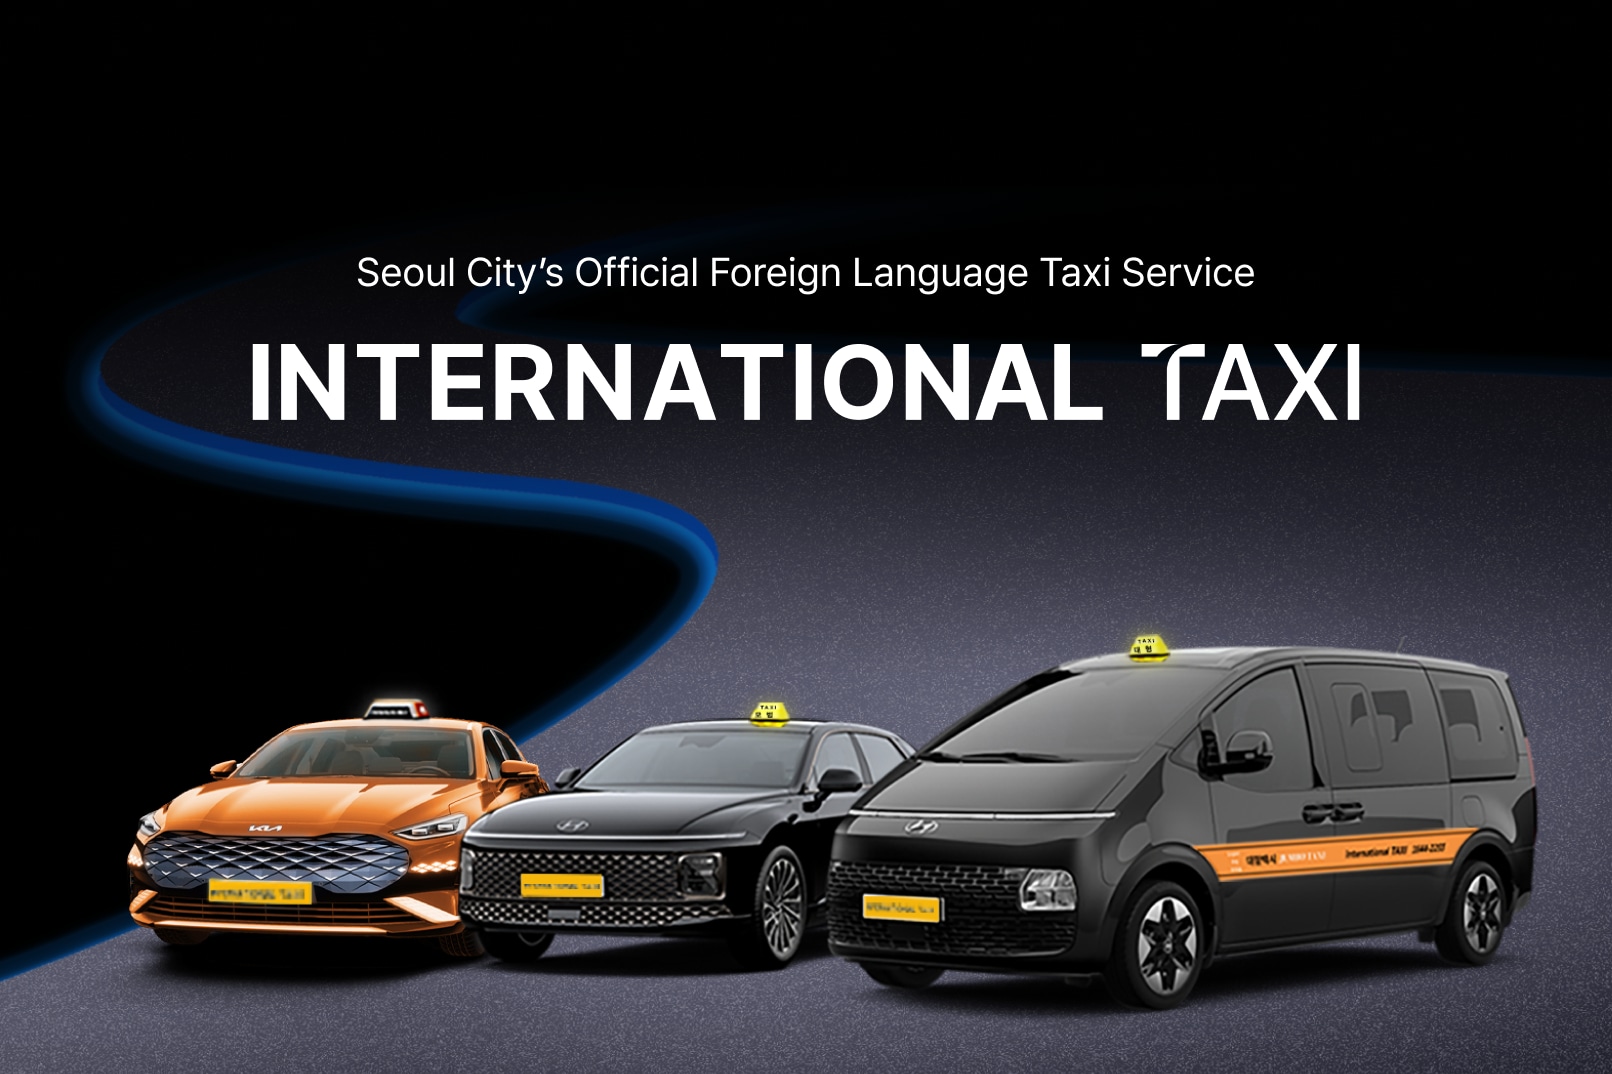 仁川國際機場（ICN）往首爾計程車包車接送（International Taxi 提供）